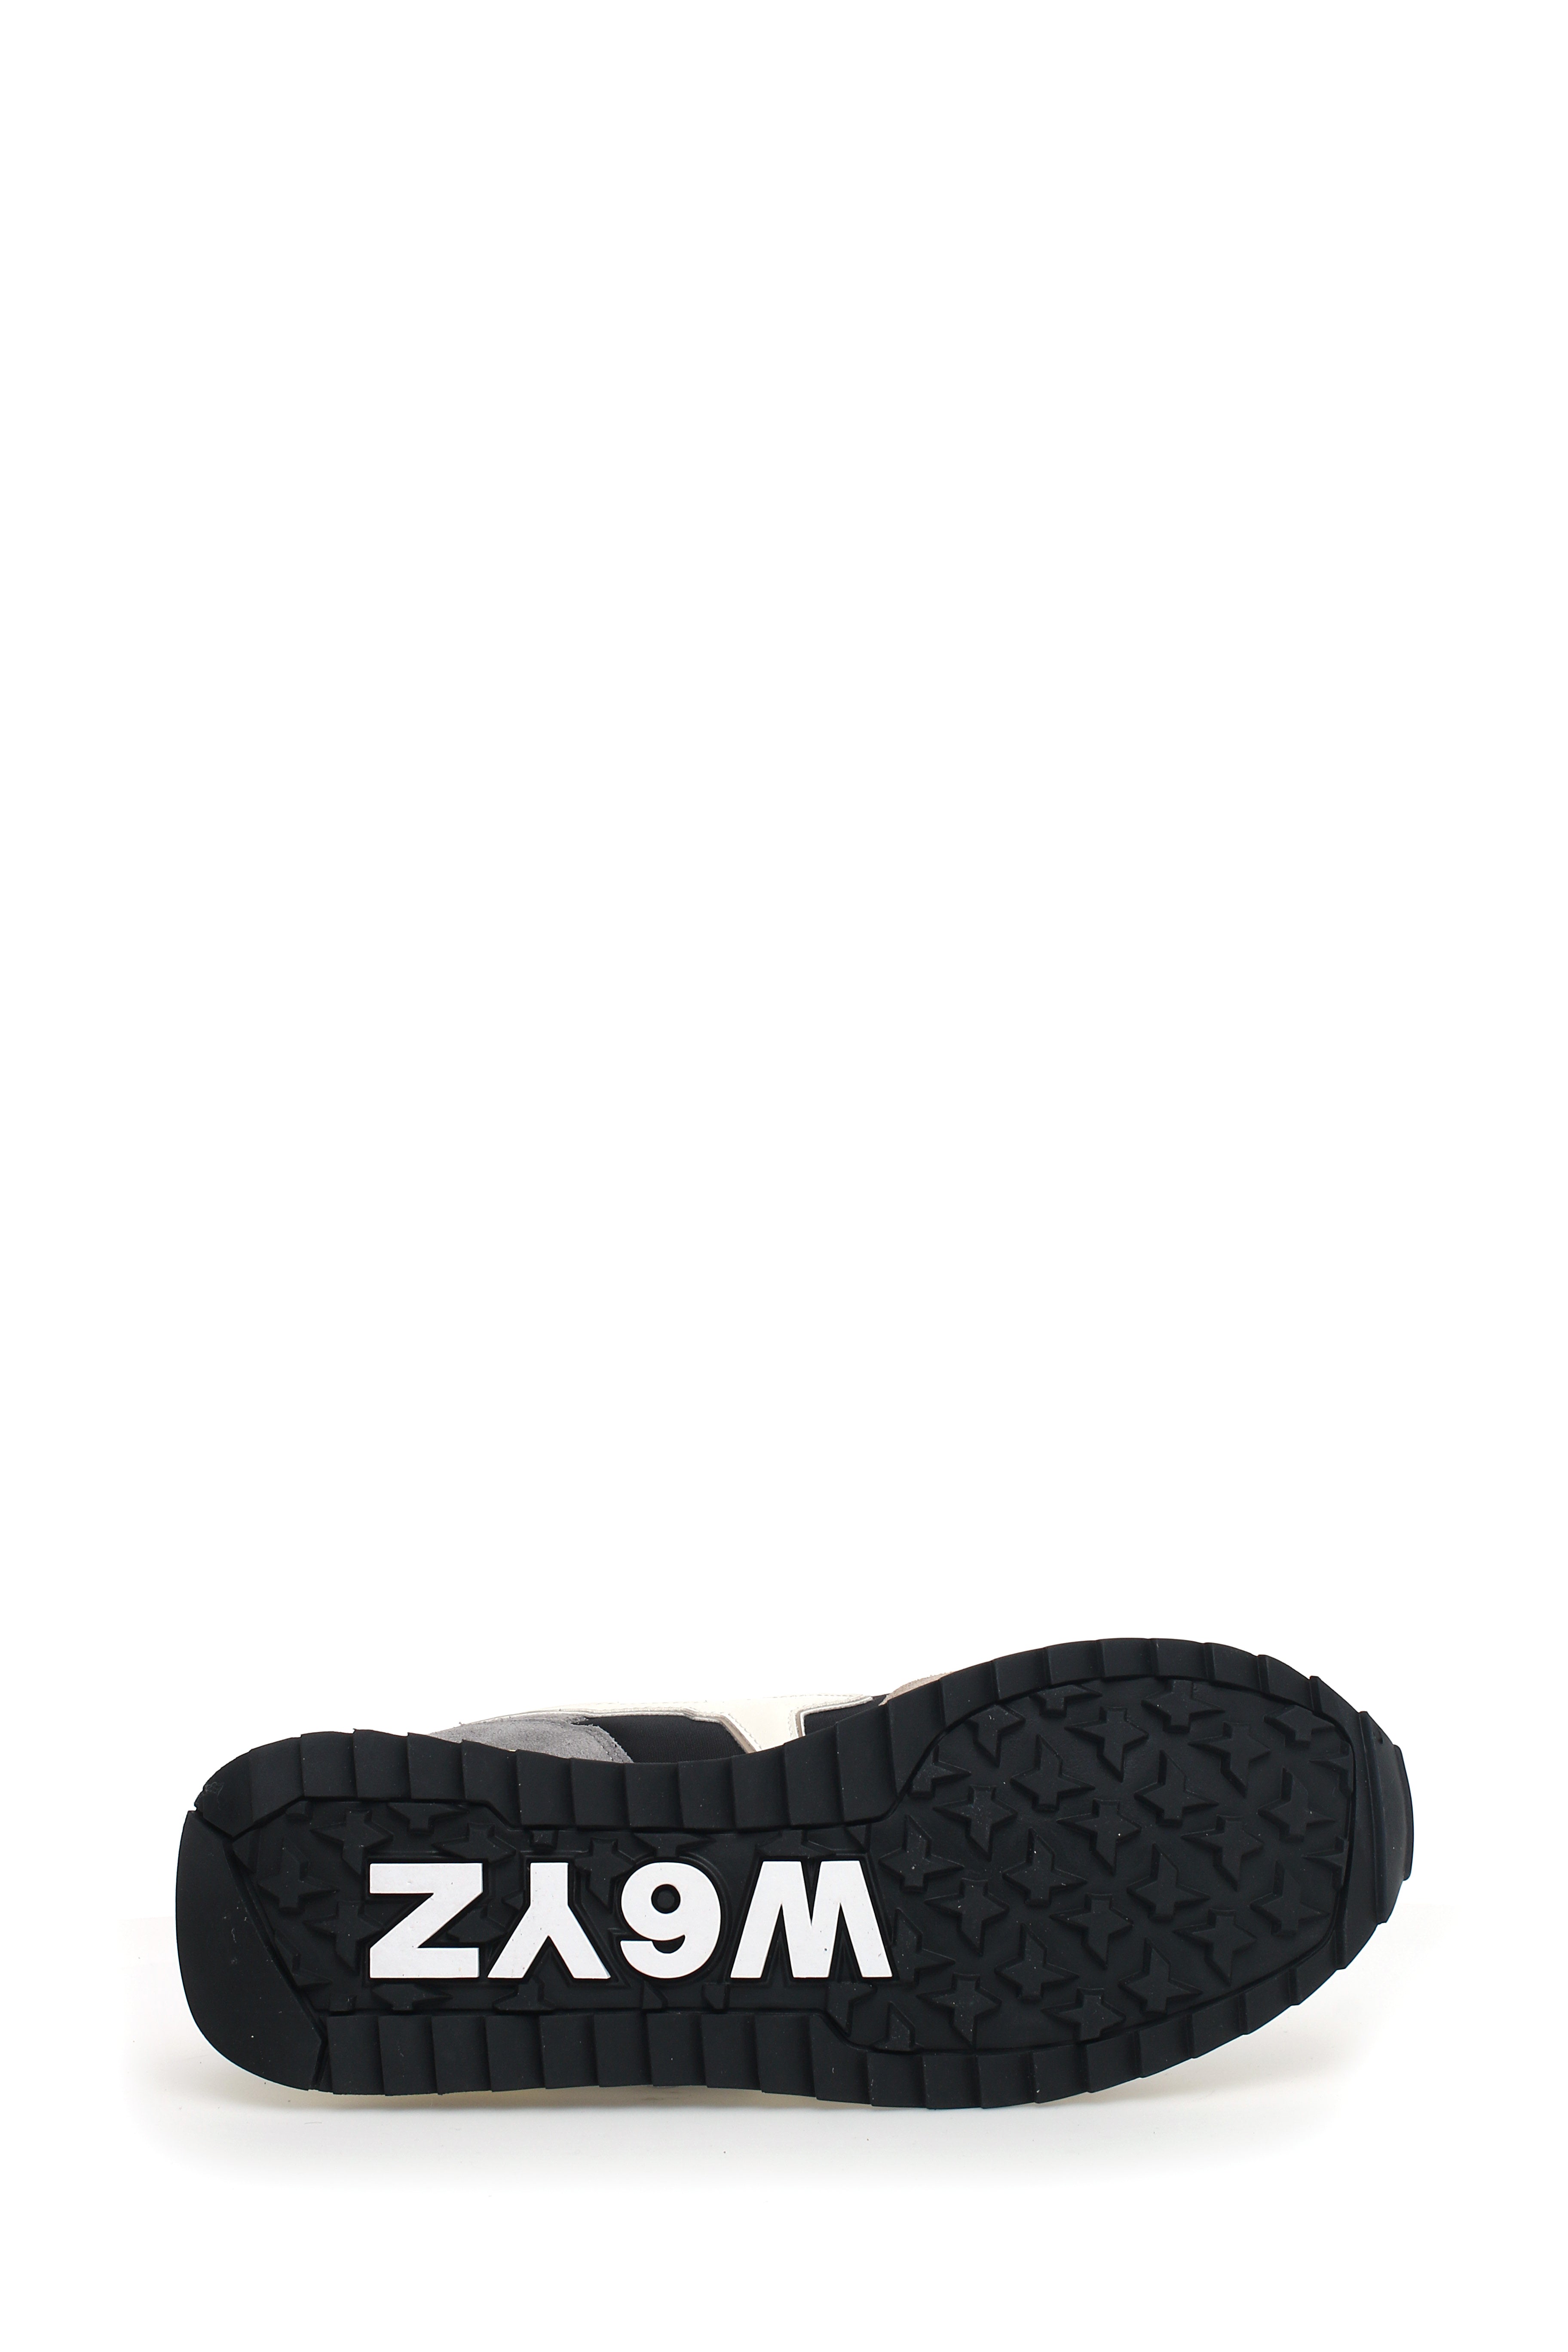 W6yz Sneakers Uomo 2015185 20 Beige